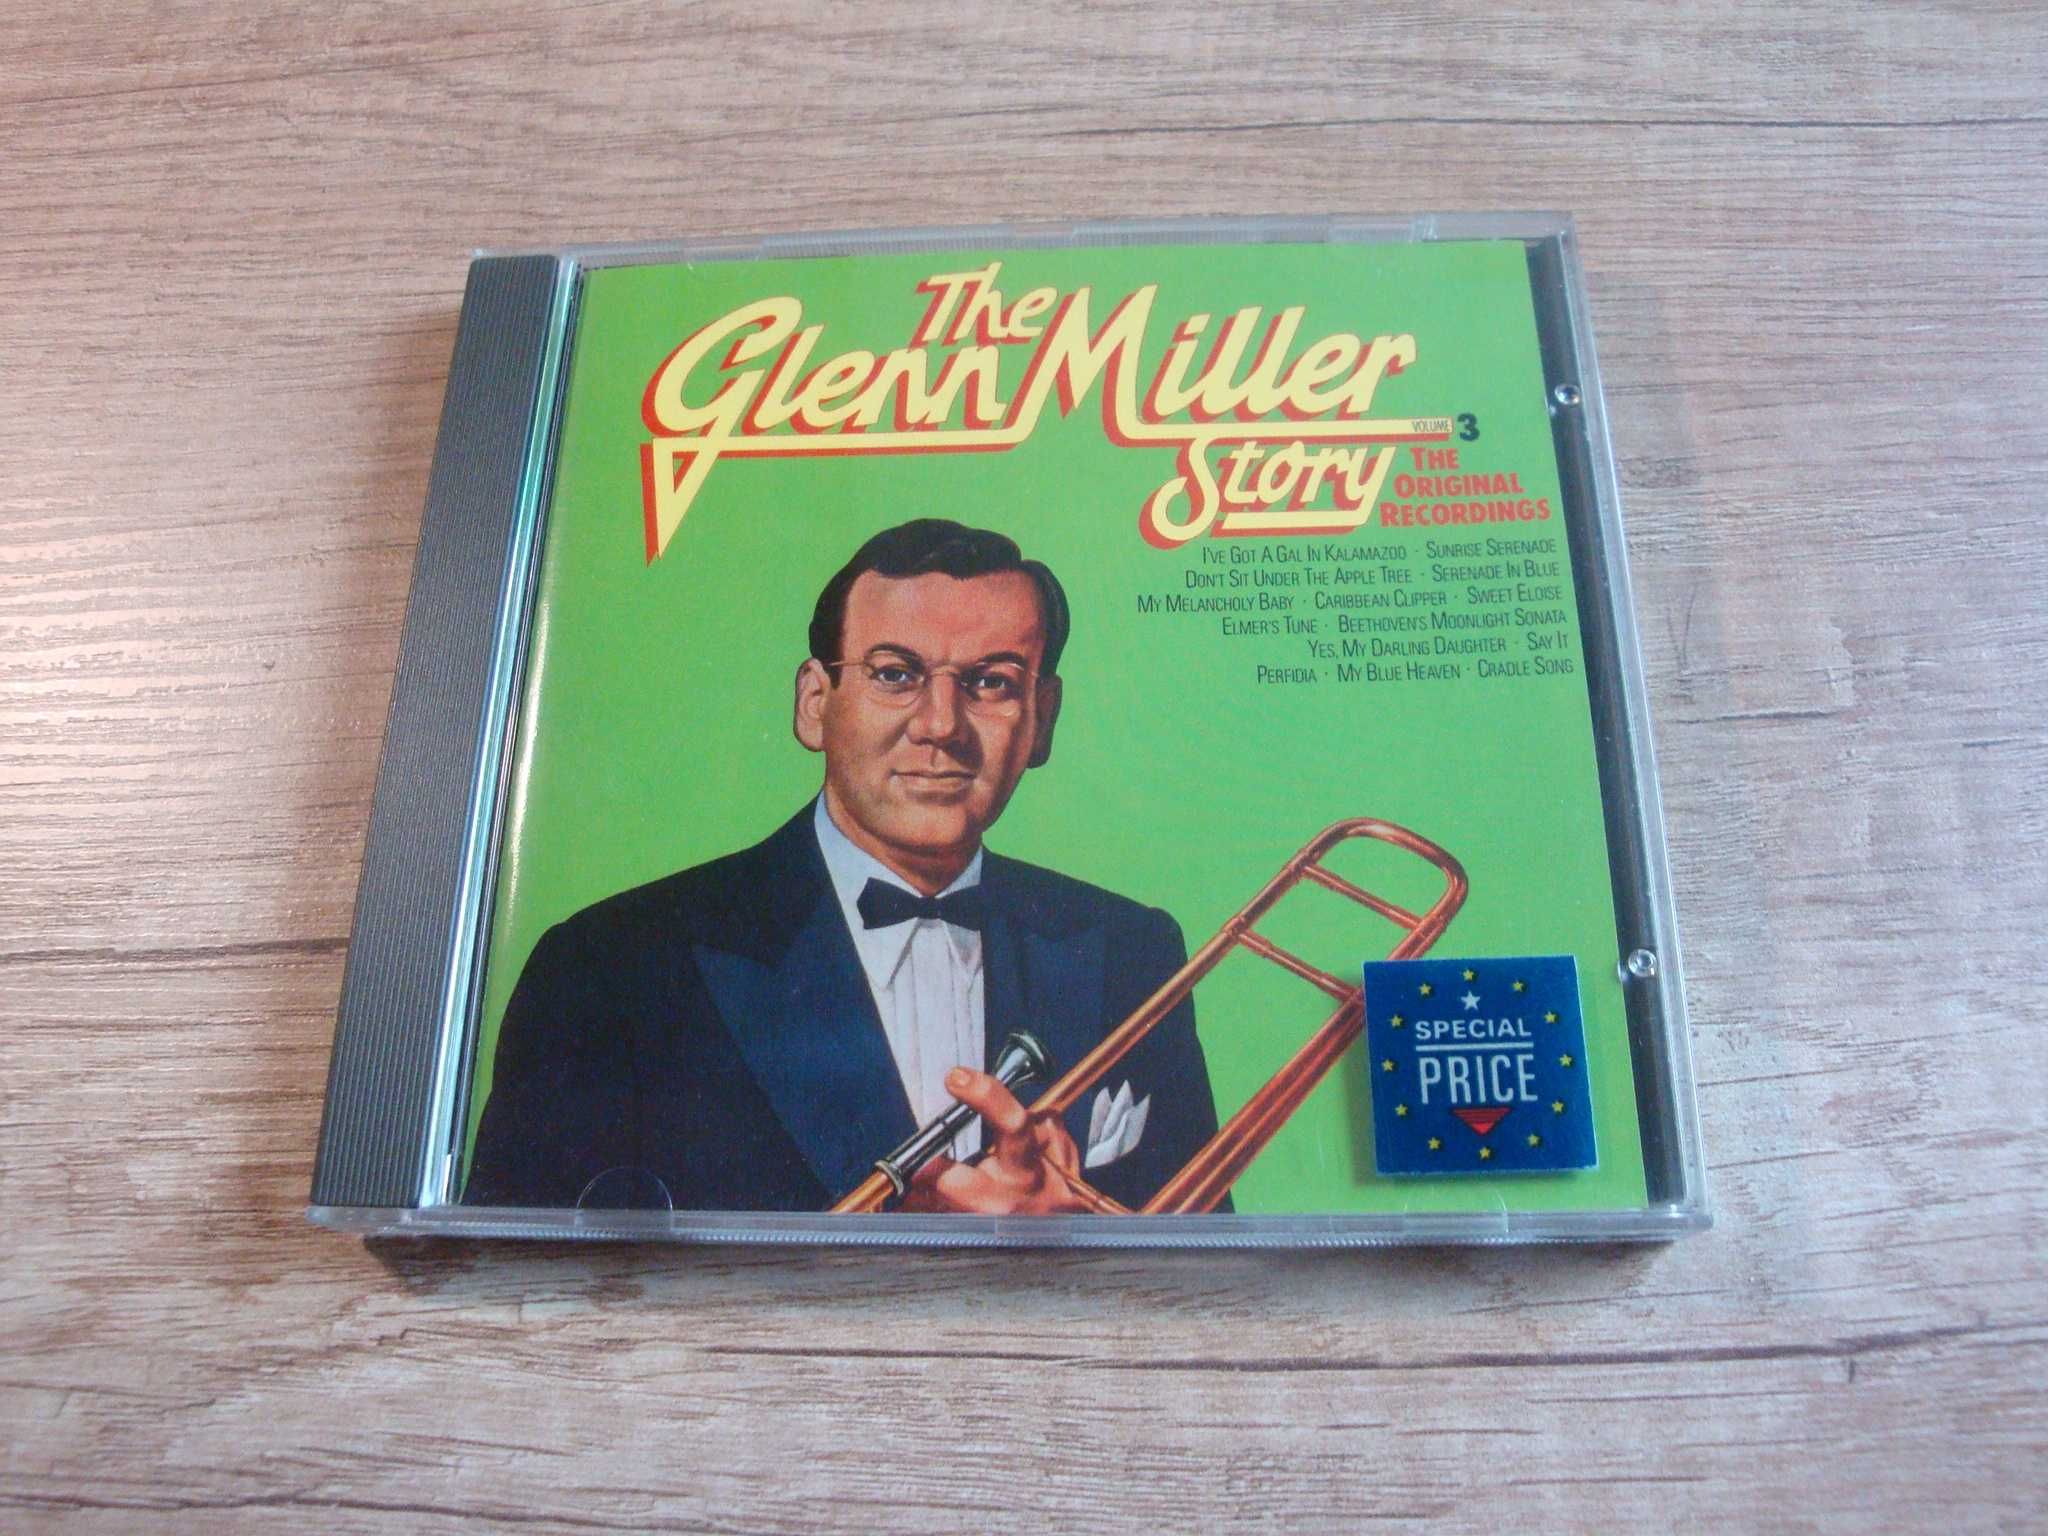 Glenn Miller – The Glenn Miller Story (The Original Recordings)